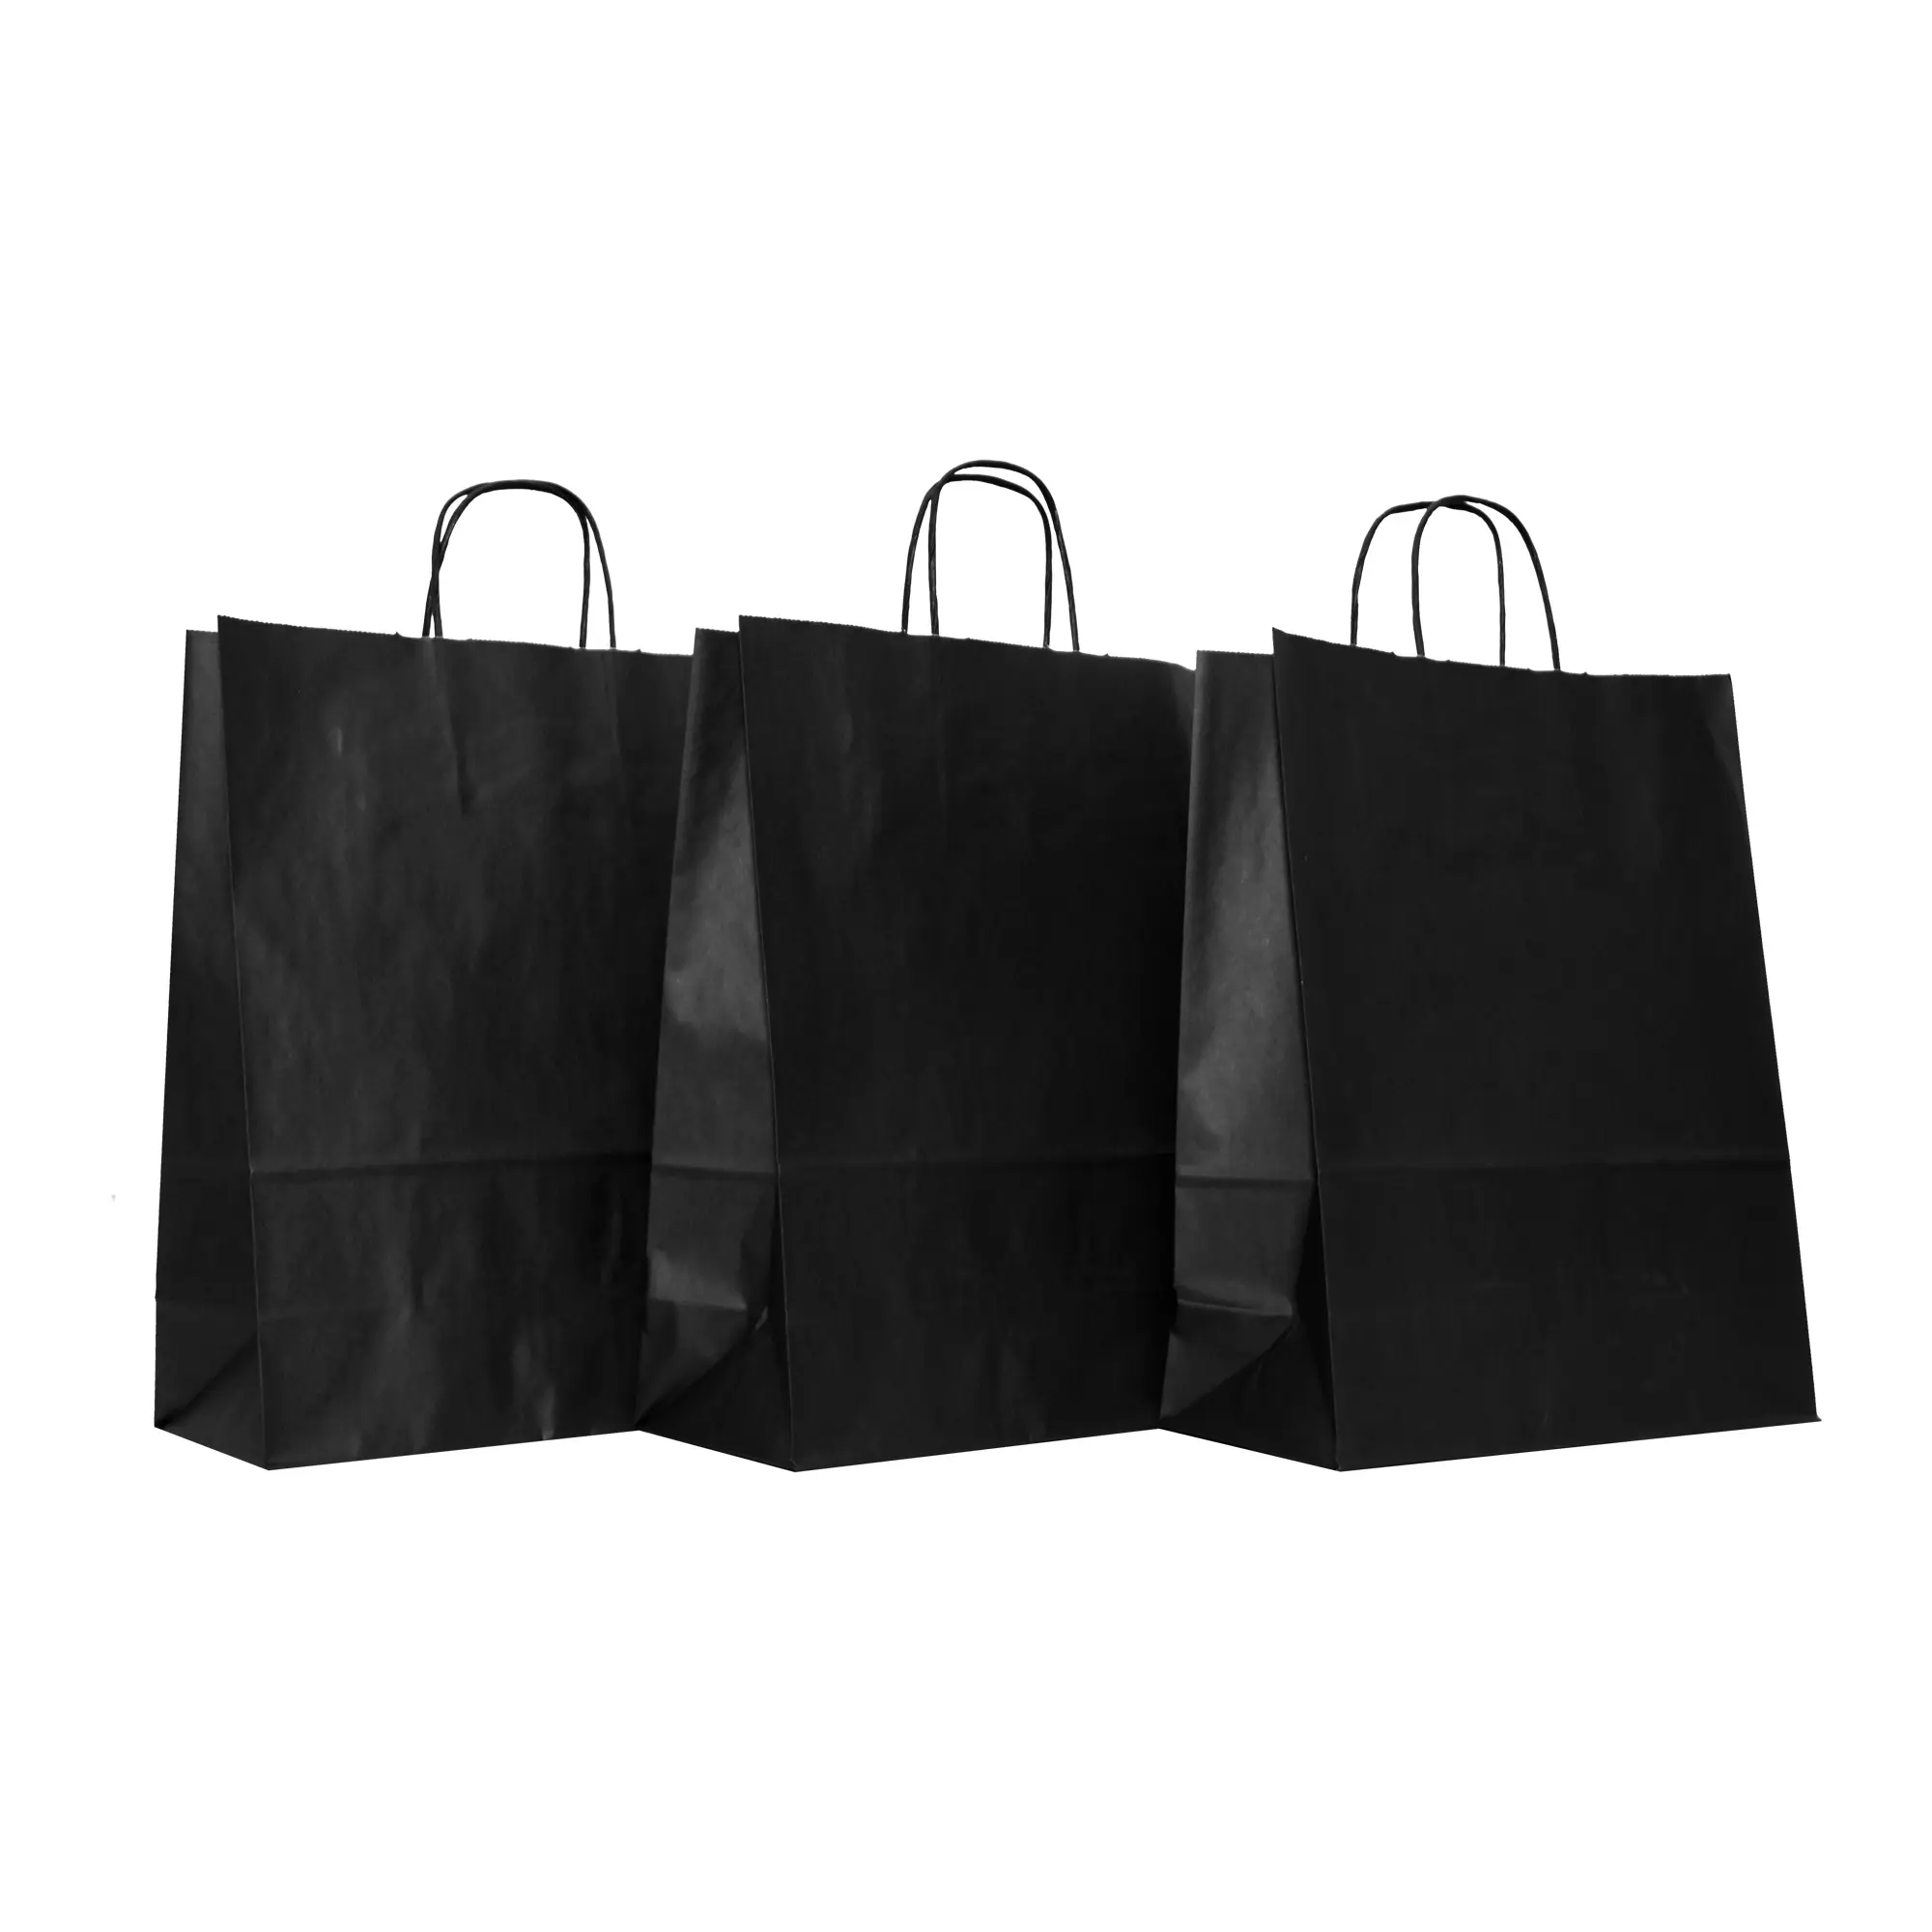 Großhandel Hochwertige Hot Selling Anpassen Farbe Shopping Papiertüten Anpassbare flache Einkaufstaschen für Lebensmittel einkaufen